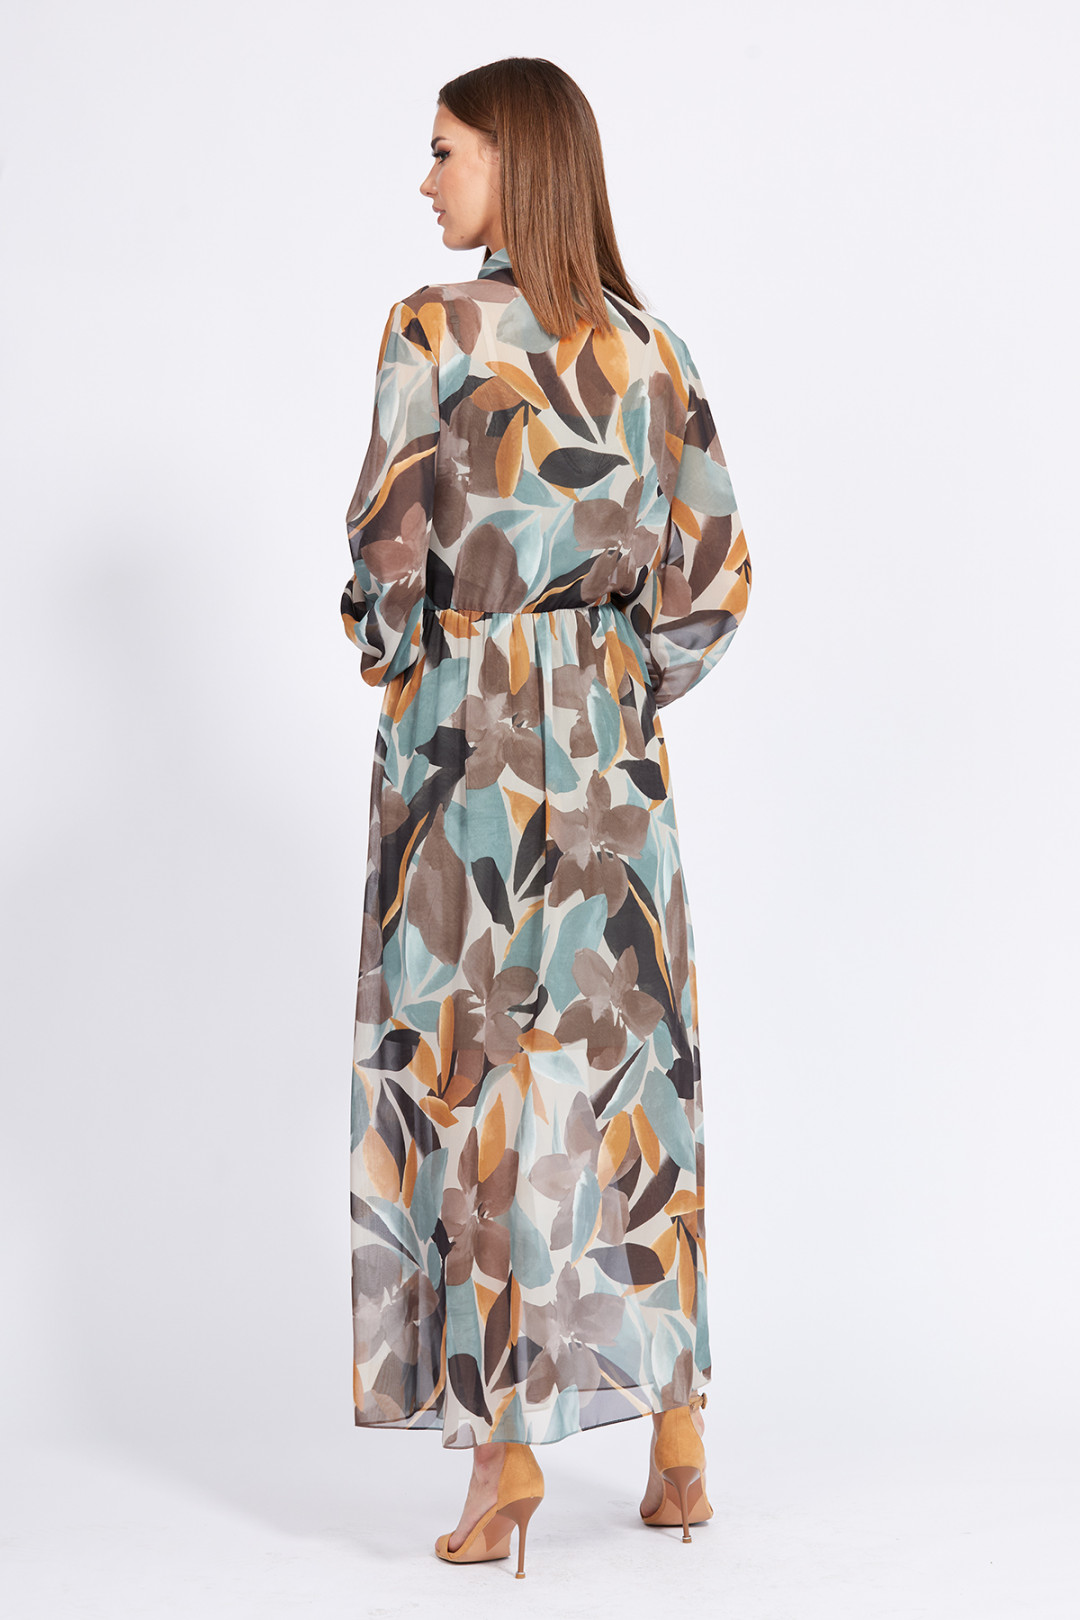 Платье Эола Стиль 2266 мятно-бежевый с рисунком